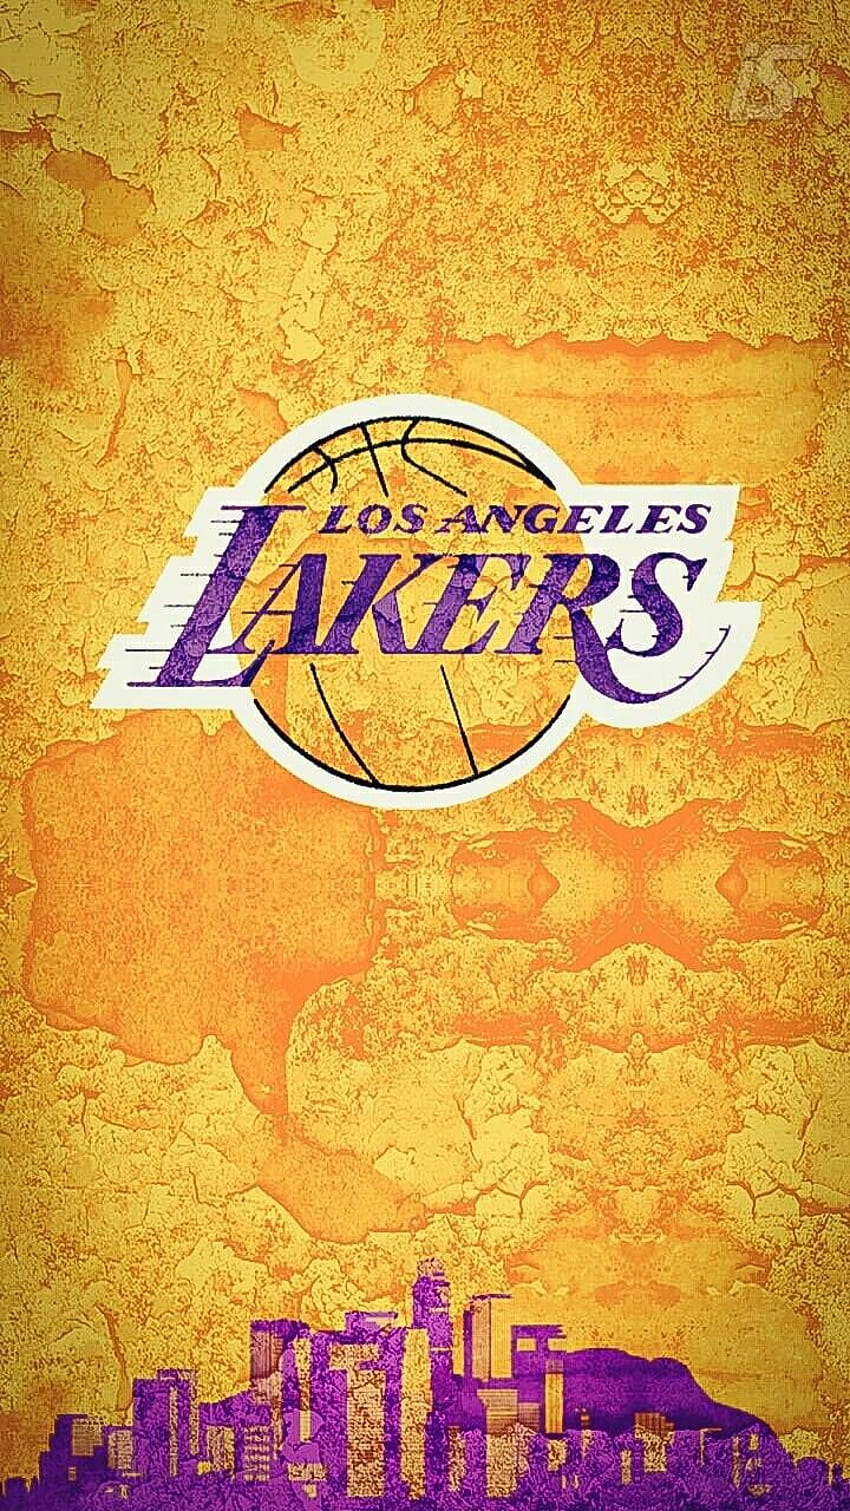 Lakers por IsraelSantanaArts - 10 ahora. Explore millones de canastas populares W en 2020. Lakers , Basketball , Lakers logo, Lakers Legends fondo de pantalla del teléfono